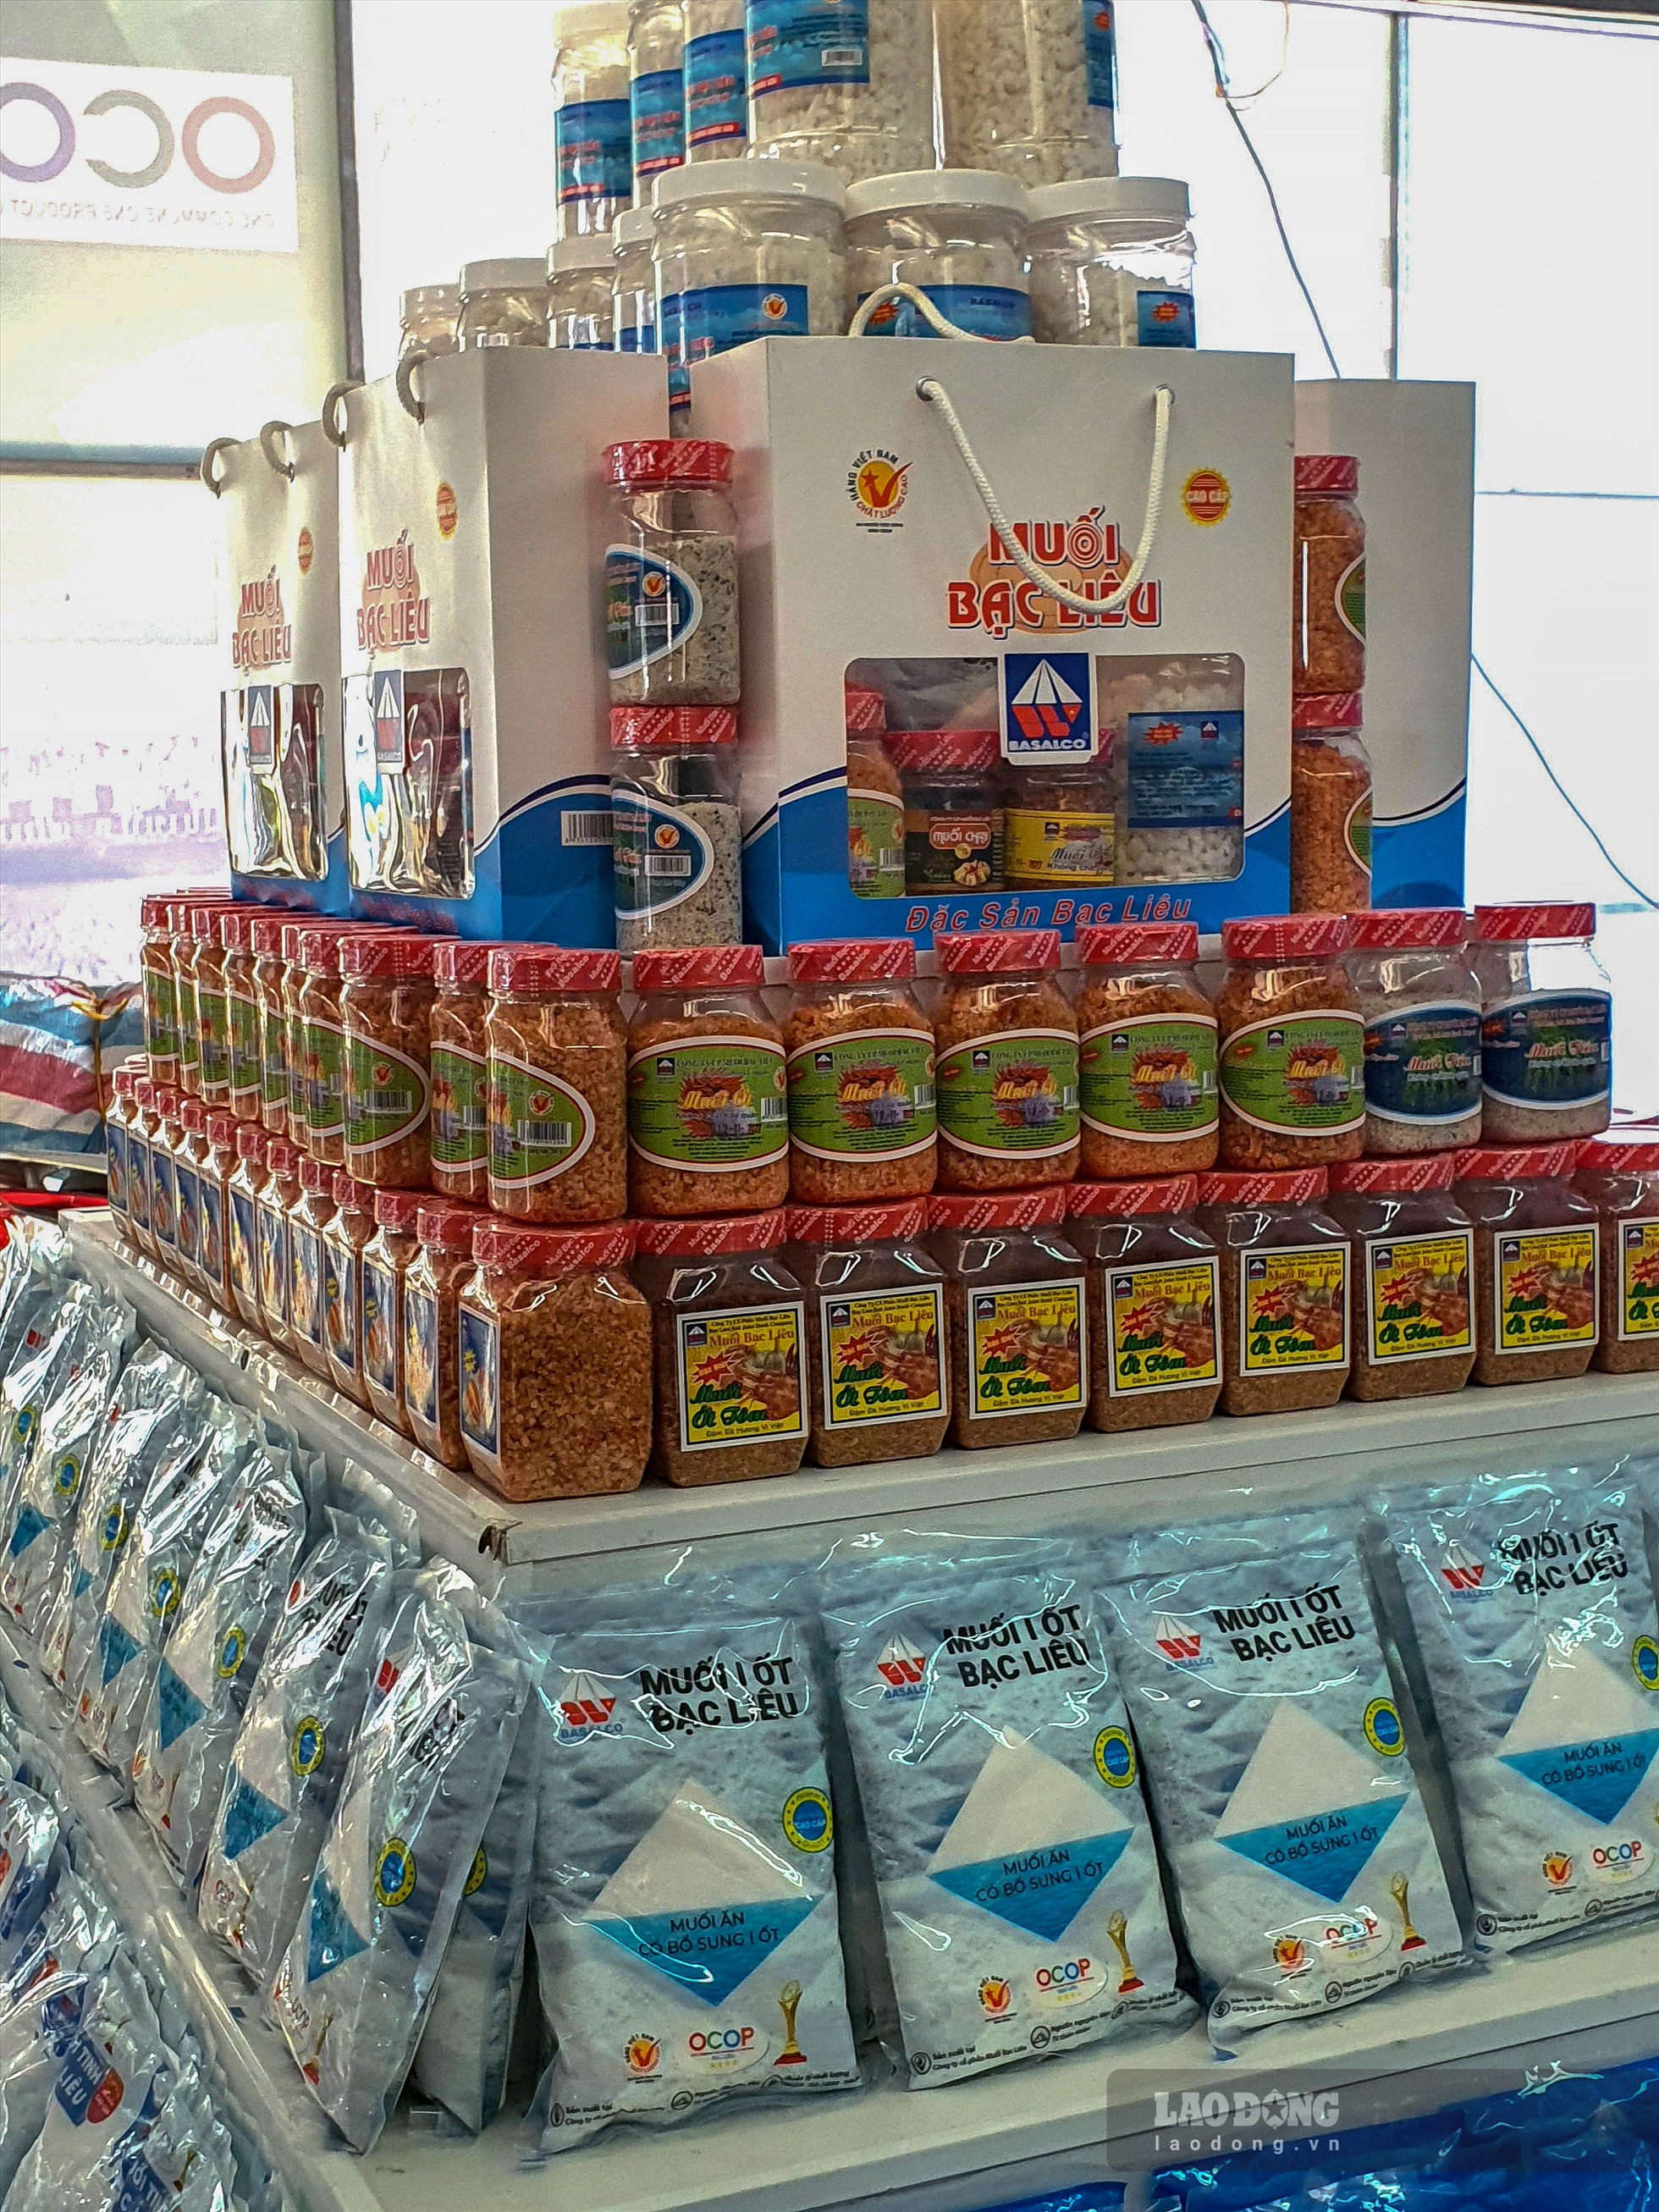 Đến nay, tỉnh Bạc Liêu đã có 10 sản phẩm muối đã được công nhận sản phẩm OCOP, gồm 7 sản phẩm muối của Công ty cổ phần muối Bạc Liêu đạt 4 sao và 3 sản phẩm muối của Công ty cổ phần muối Đông Hải đạt 3 sao.